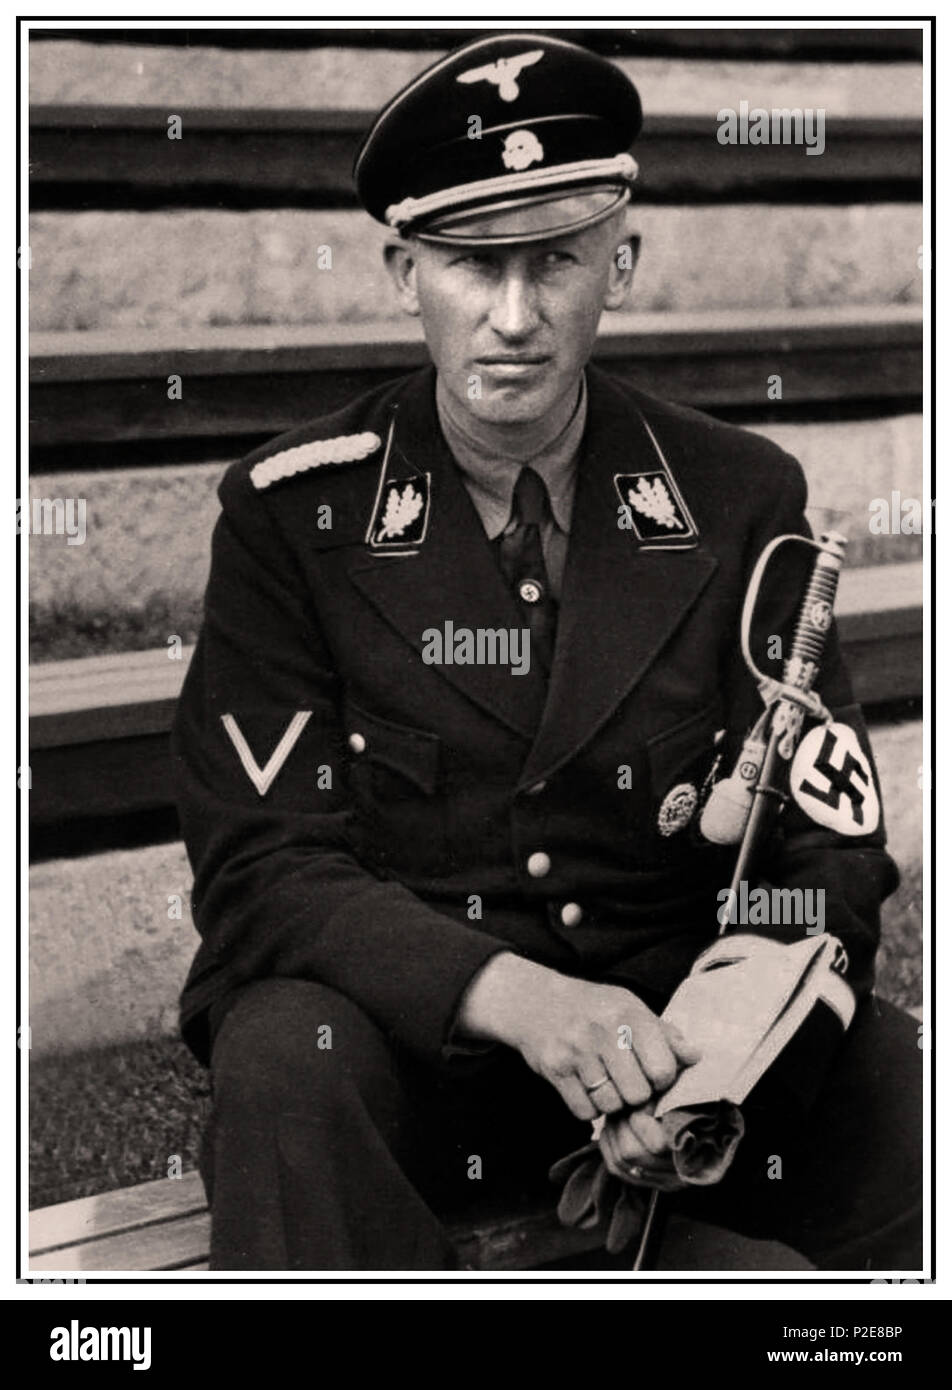 Ss General Reinhard Heydrich Stockfotos Und Bilder Kaufen Alamy